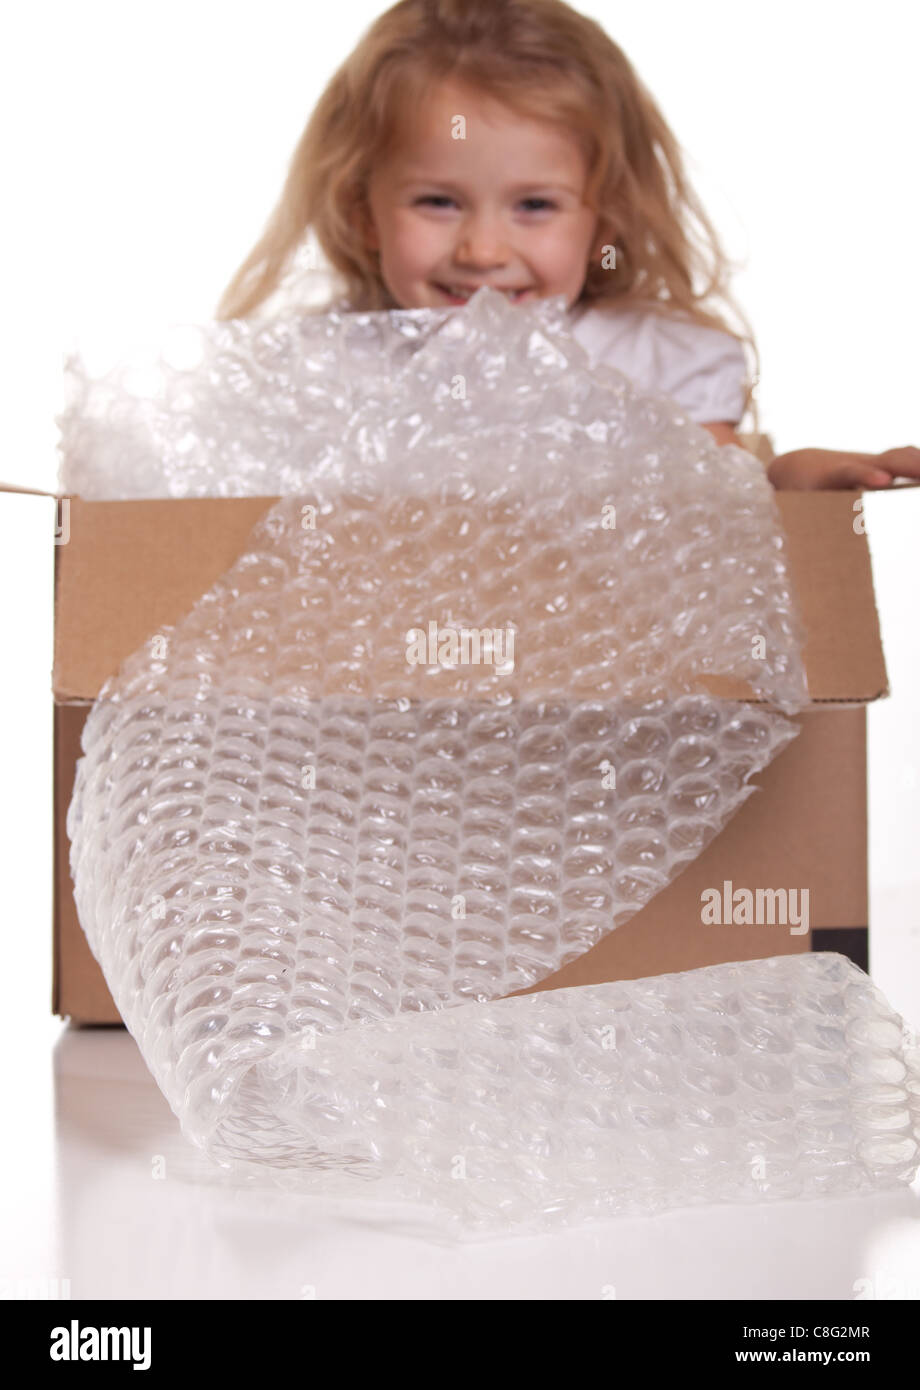 Una excelente imagen de un lindo niño se empaquetan en una caja de envío. Foto de stock